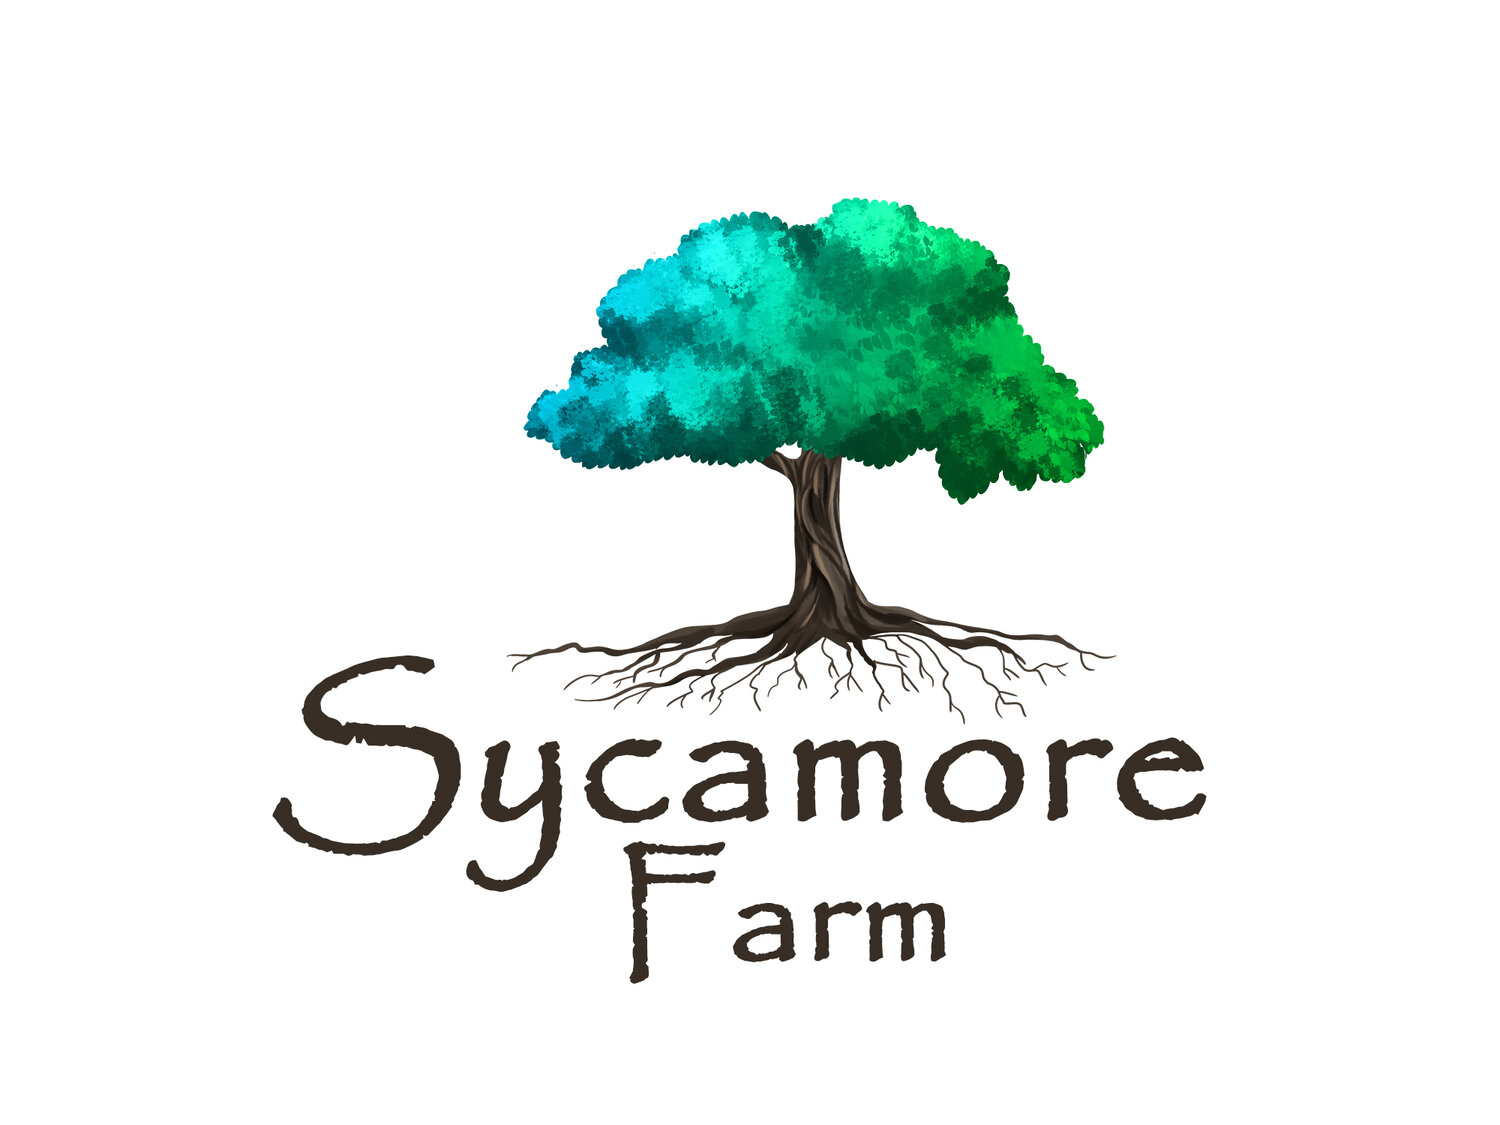 Sycamore Farm Ky Inc.